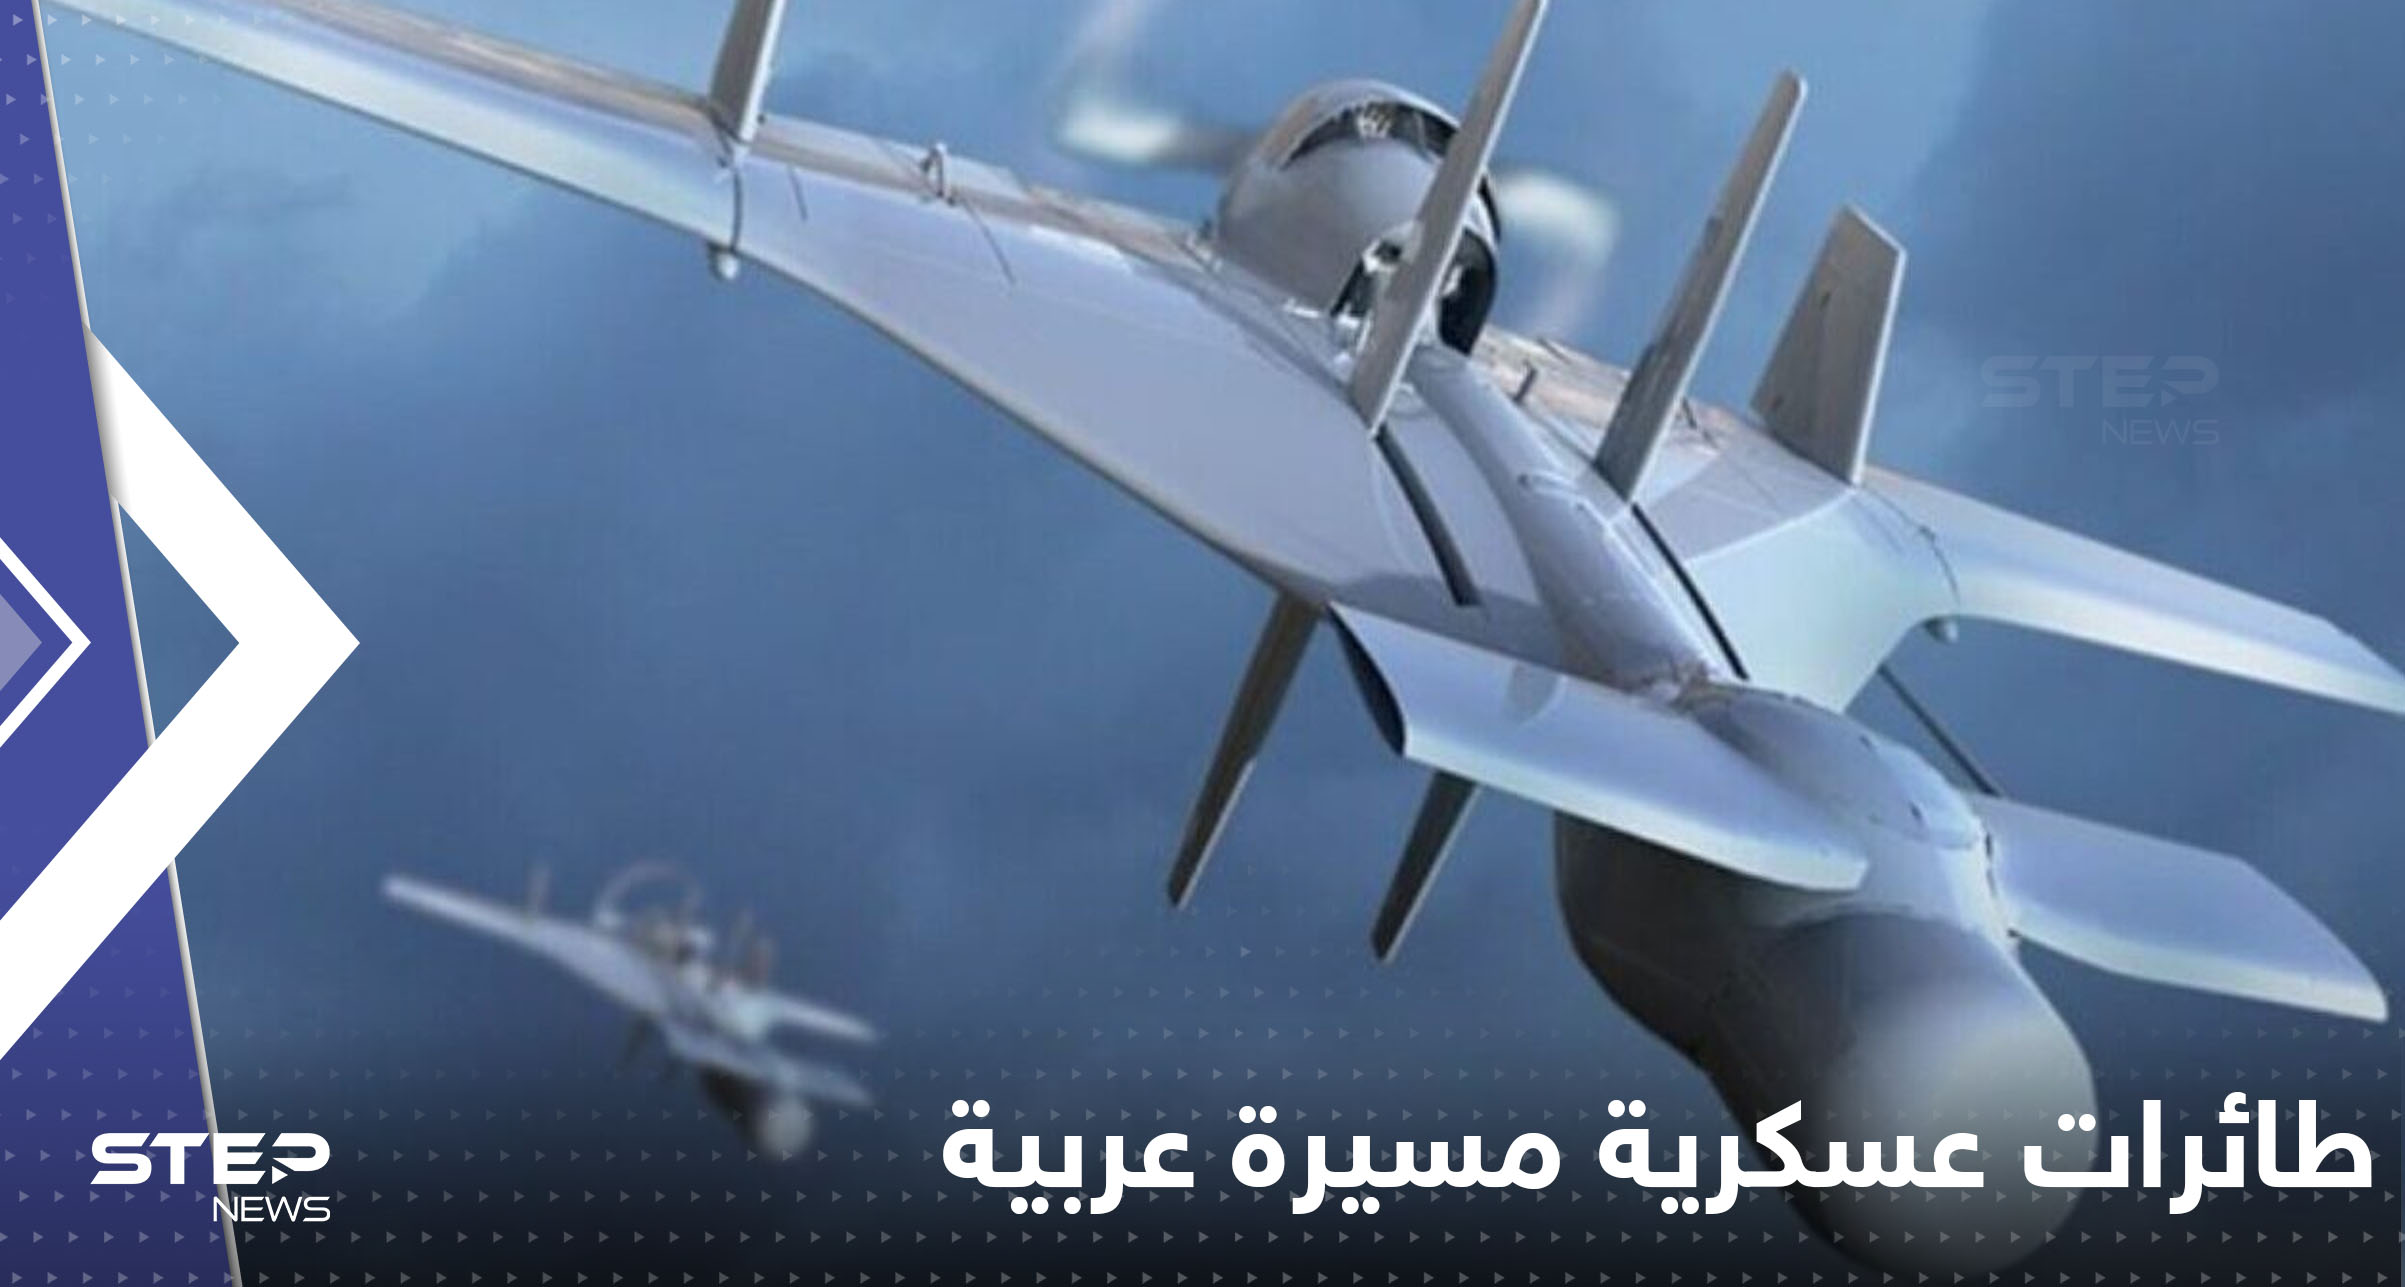 دولة عربية تبدأ بتصنيع طائرات مسيرة